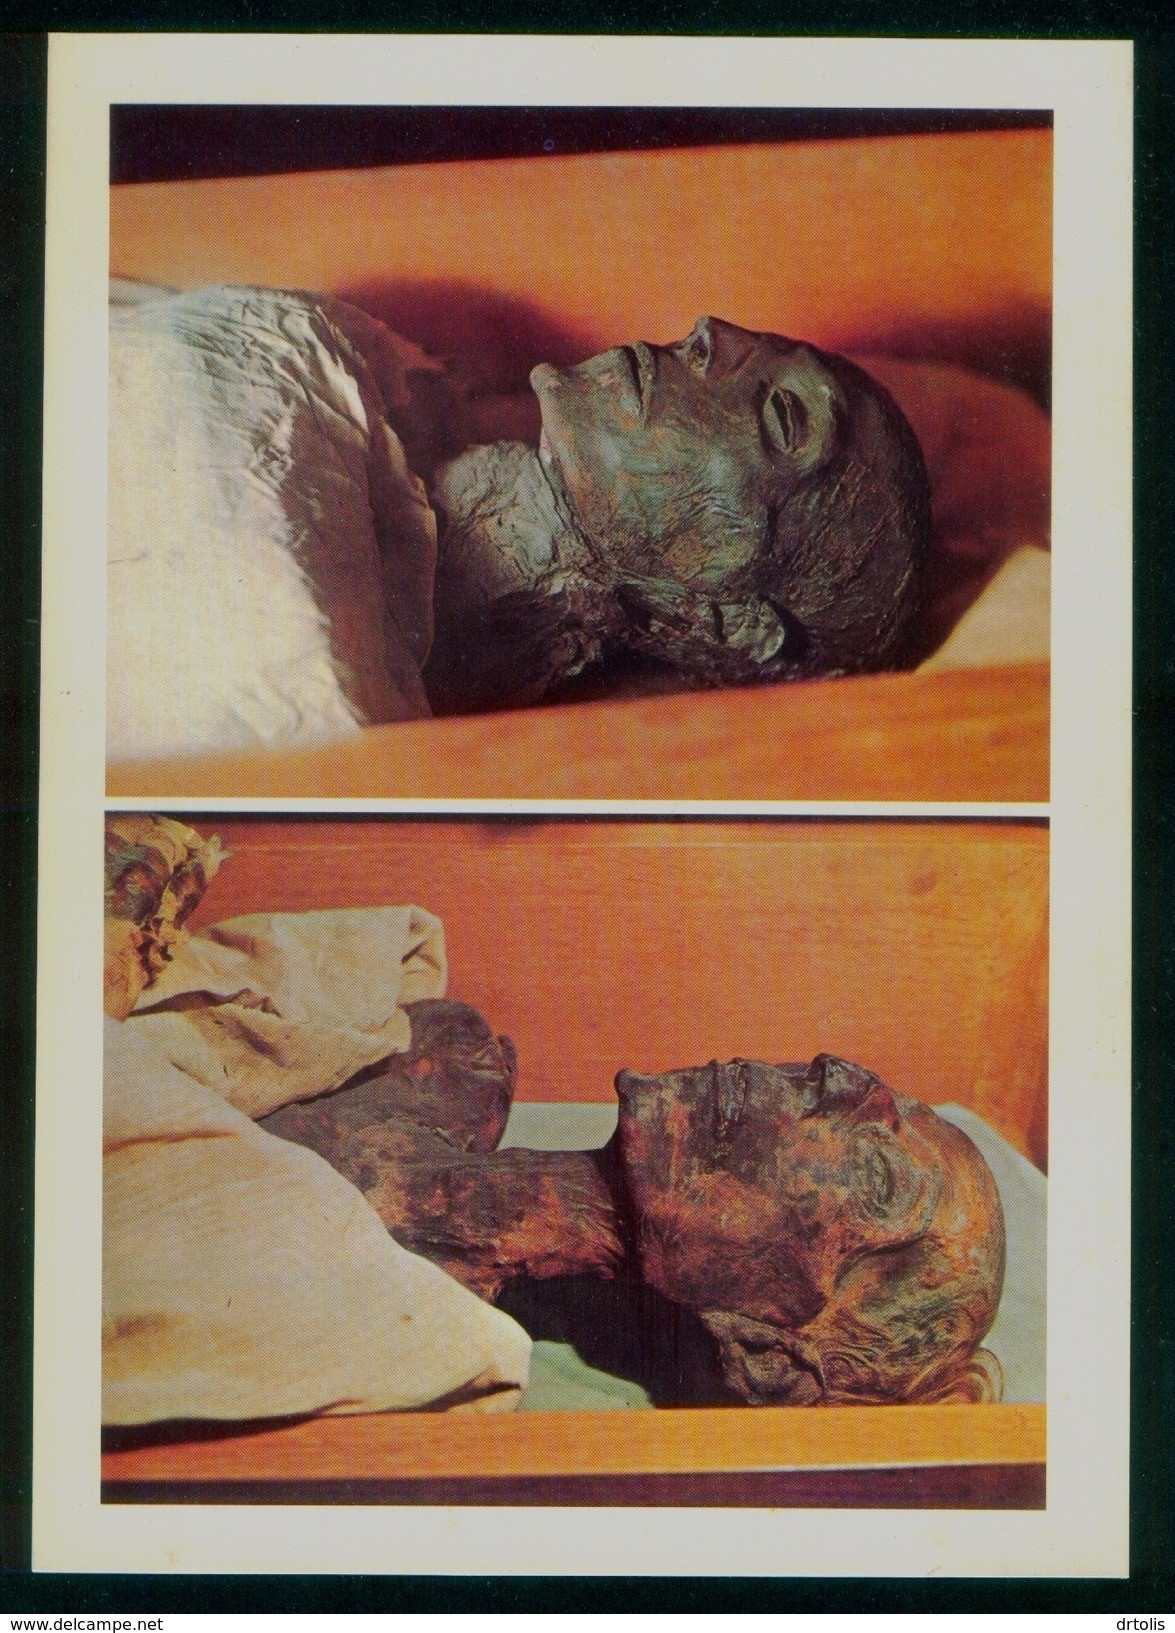 EGYPT / ISRAEL / RELIGION / JEWISH / EGYPTOLOGY / MUMMIES OF SETI I & RAMSES II / DEATH - Museos